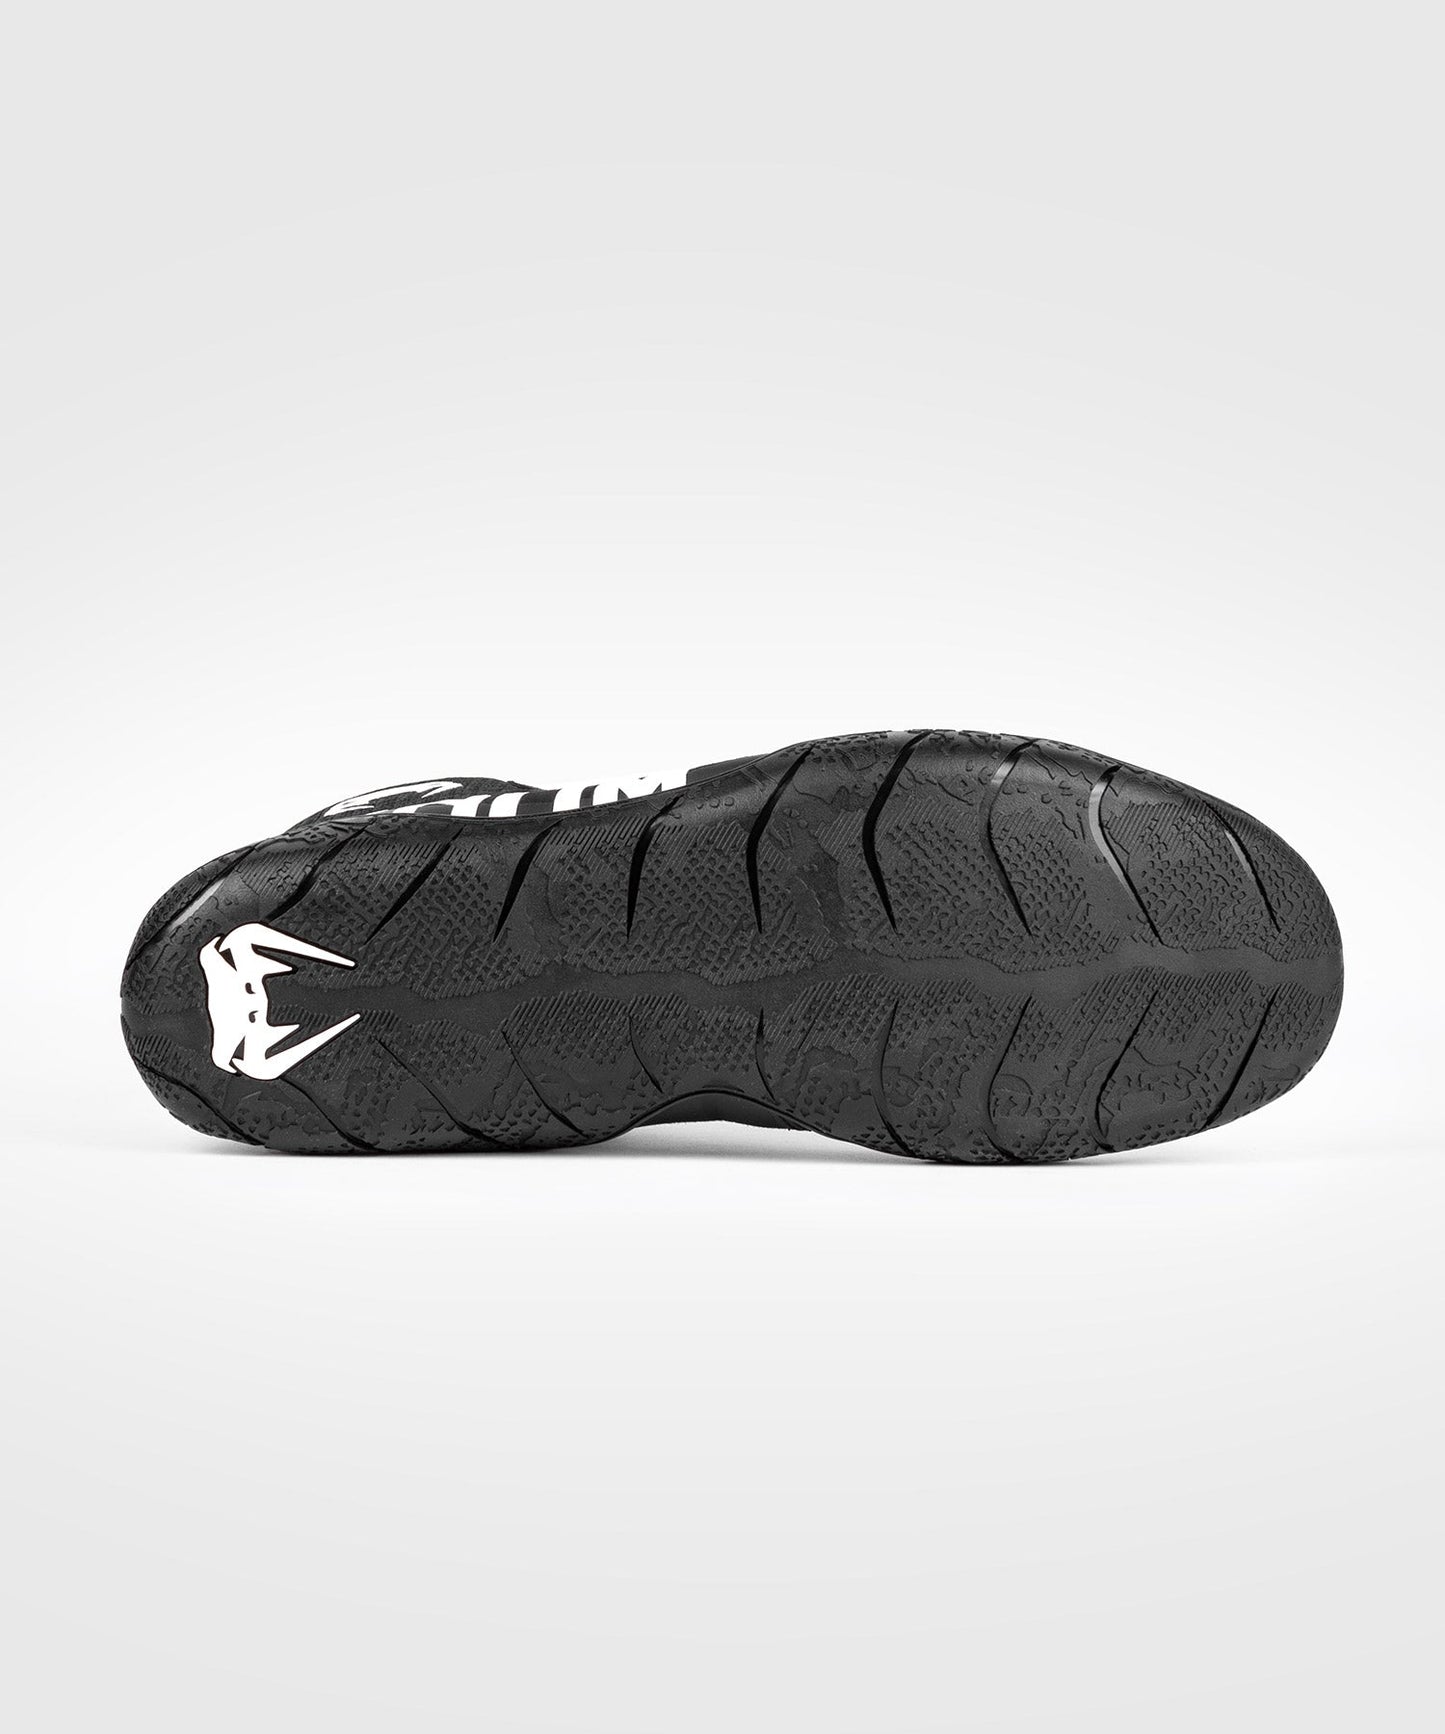 Venum Elite Wrestling Shoes - Black/White